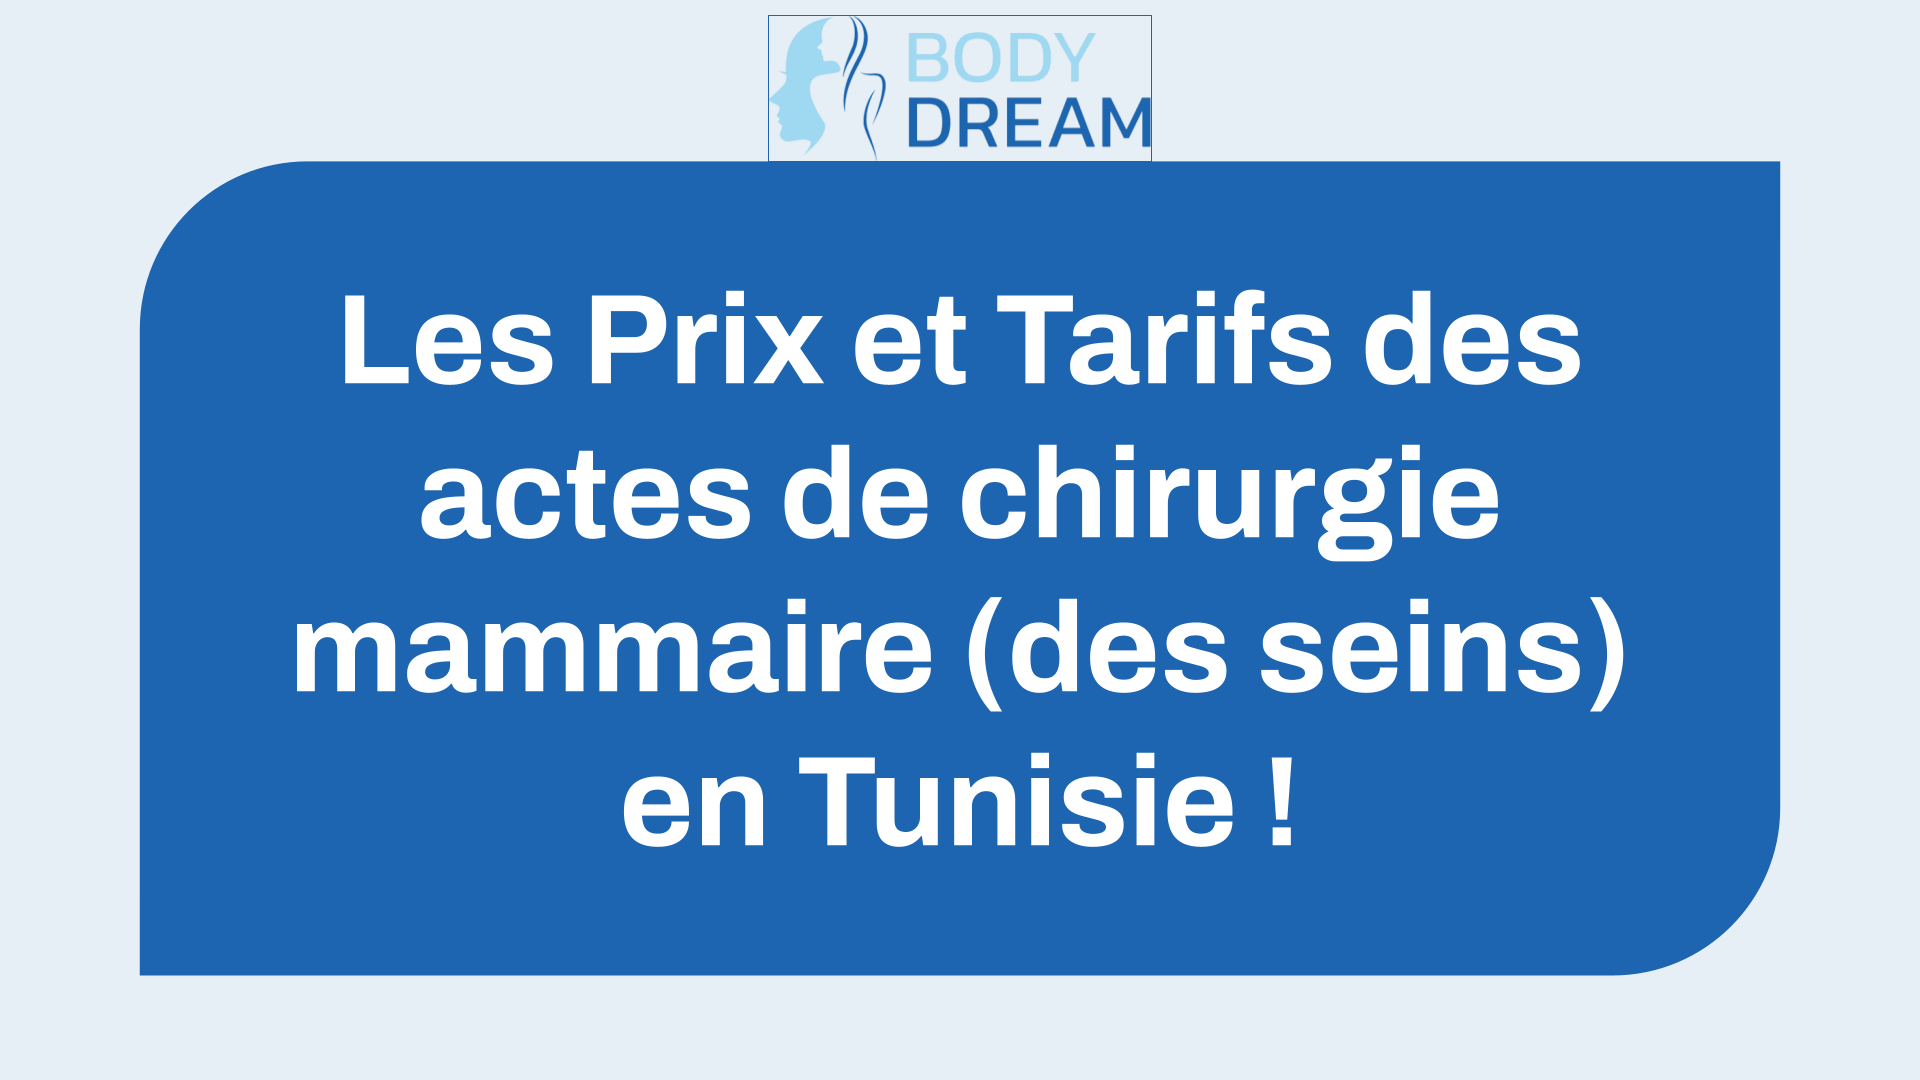 Les Prix et Tarifs des actes de chirurgie mammaire (des seins) en Tunisie !